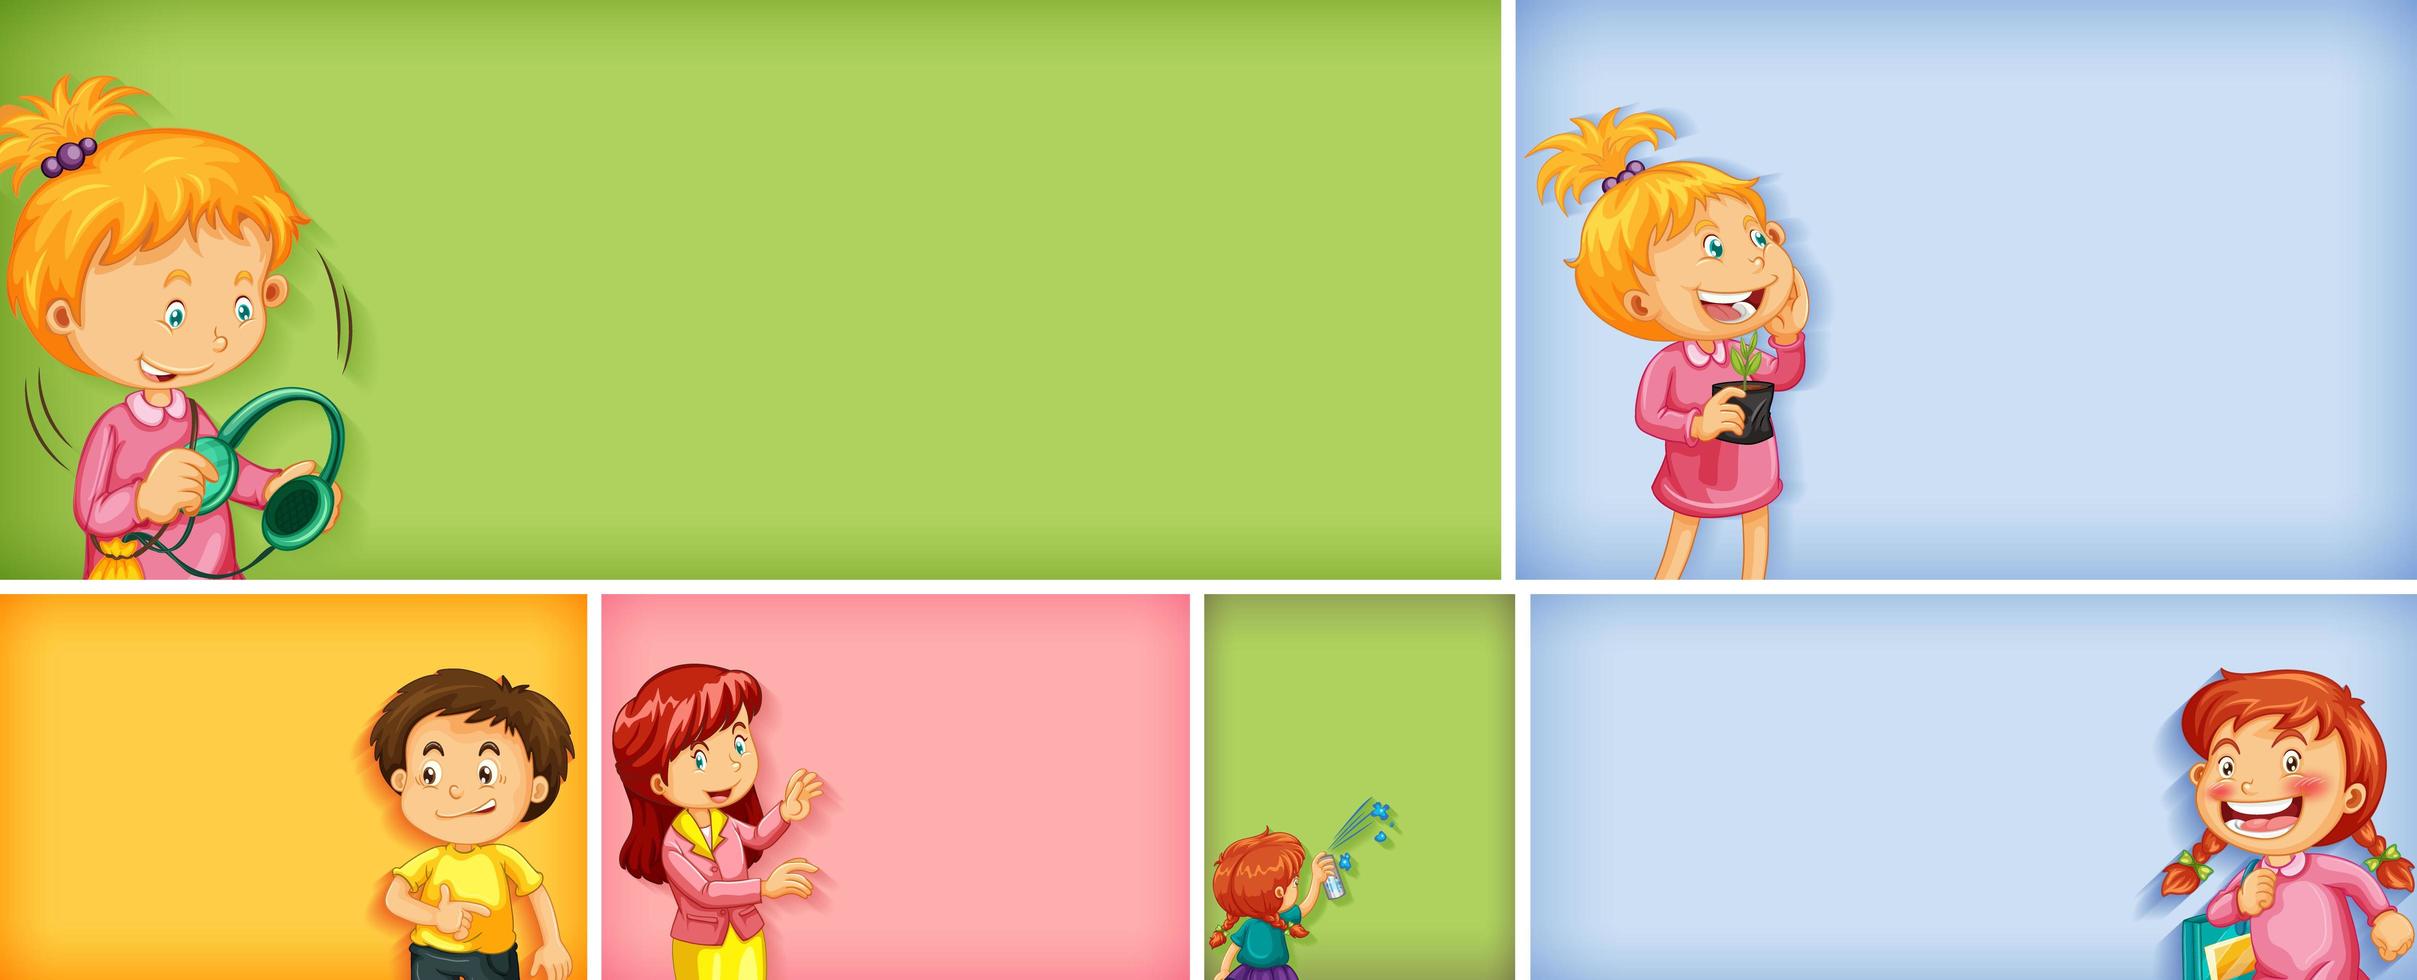 set di diversi personaggi per bambini su sfondo di colore diverso vettore